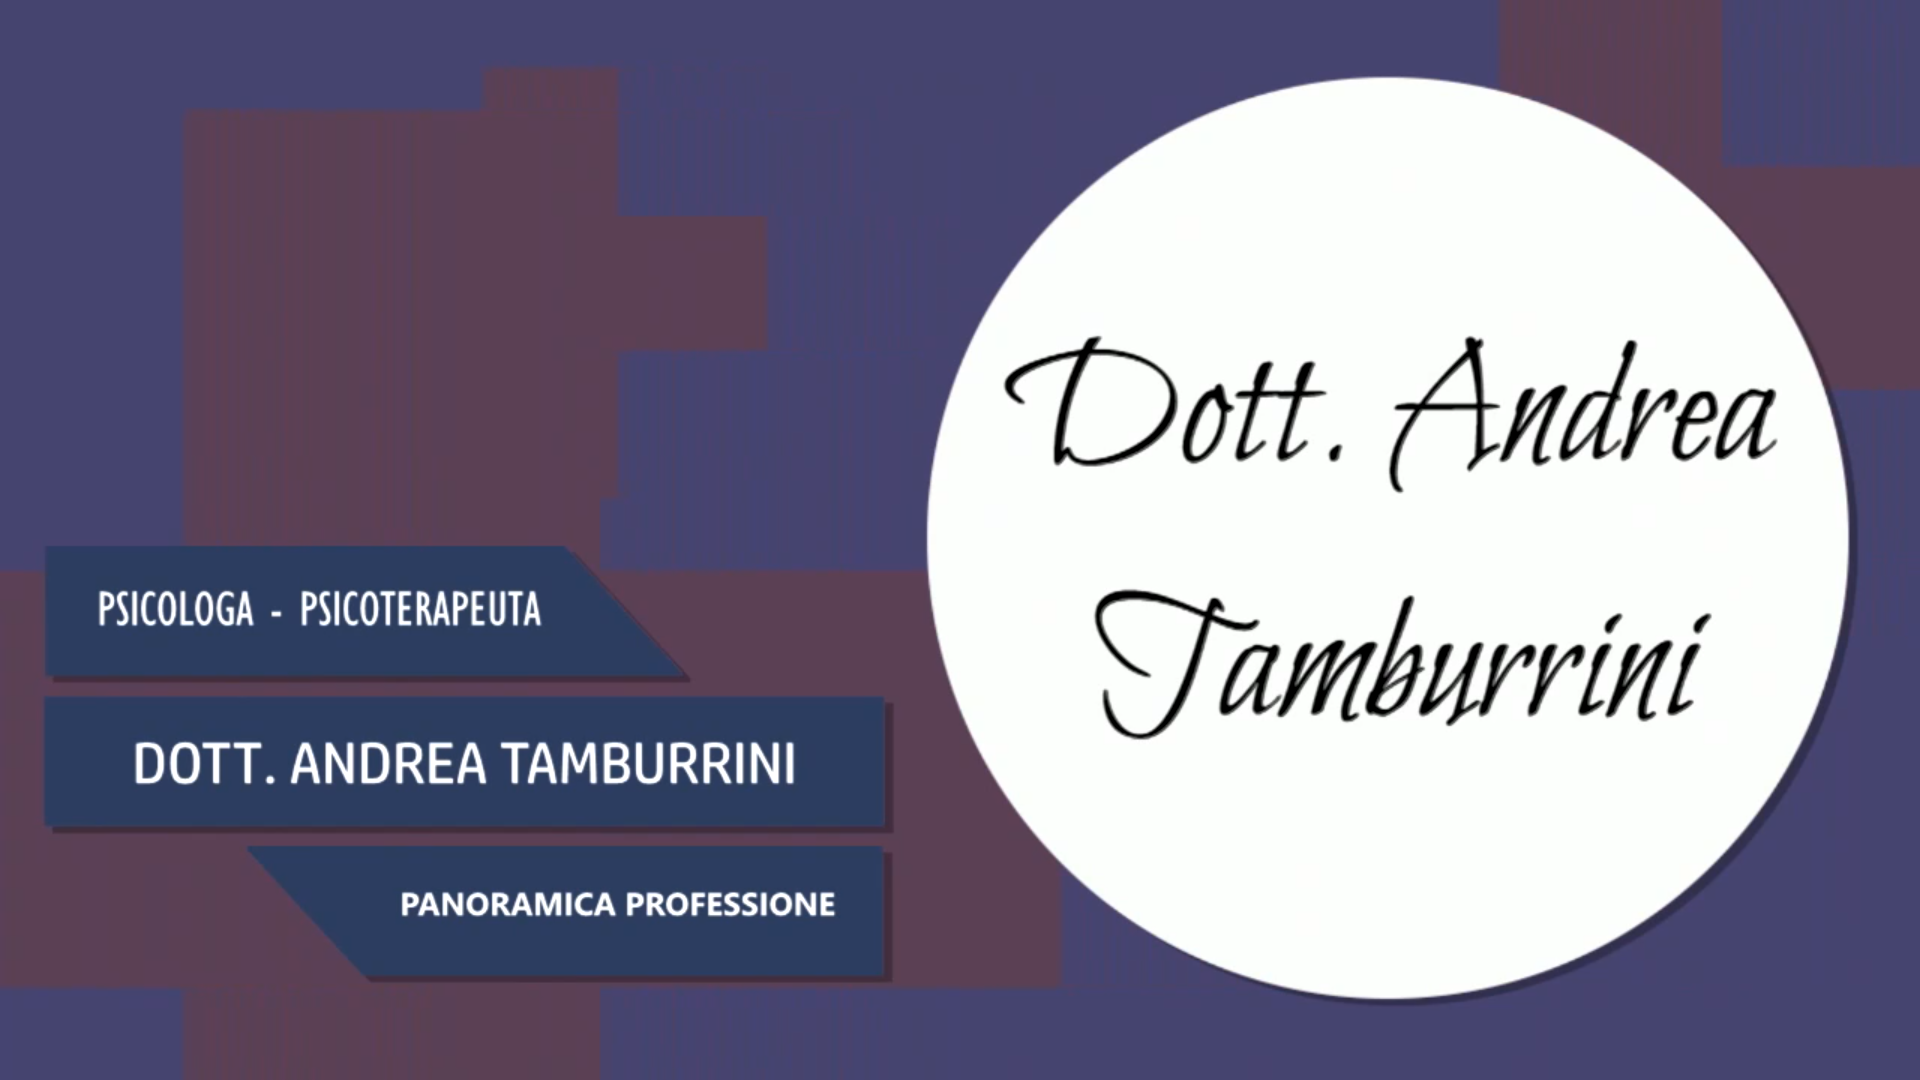 Intervista al Dott. Andrea Tamburrini – Panoramica professione